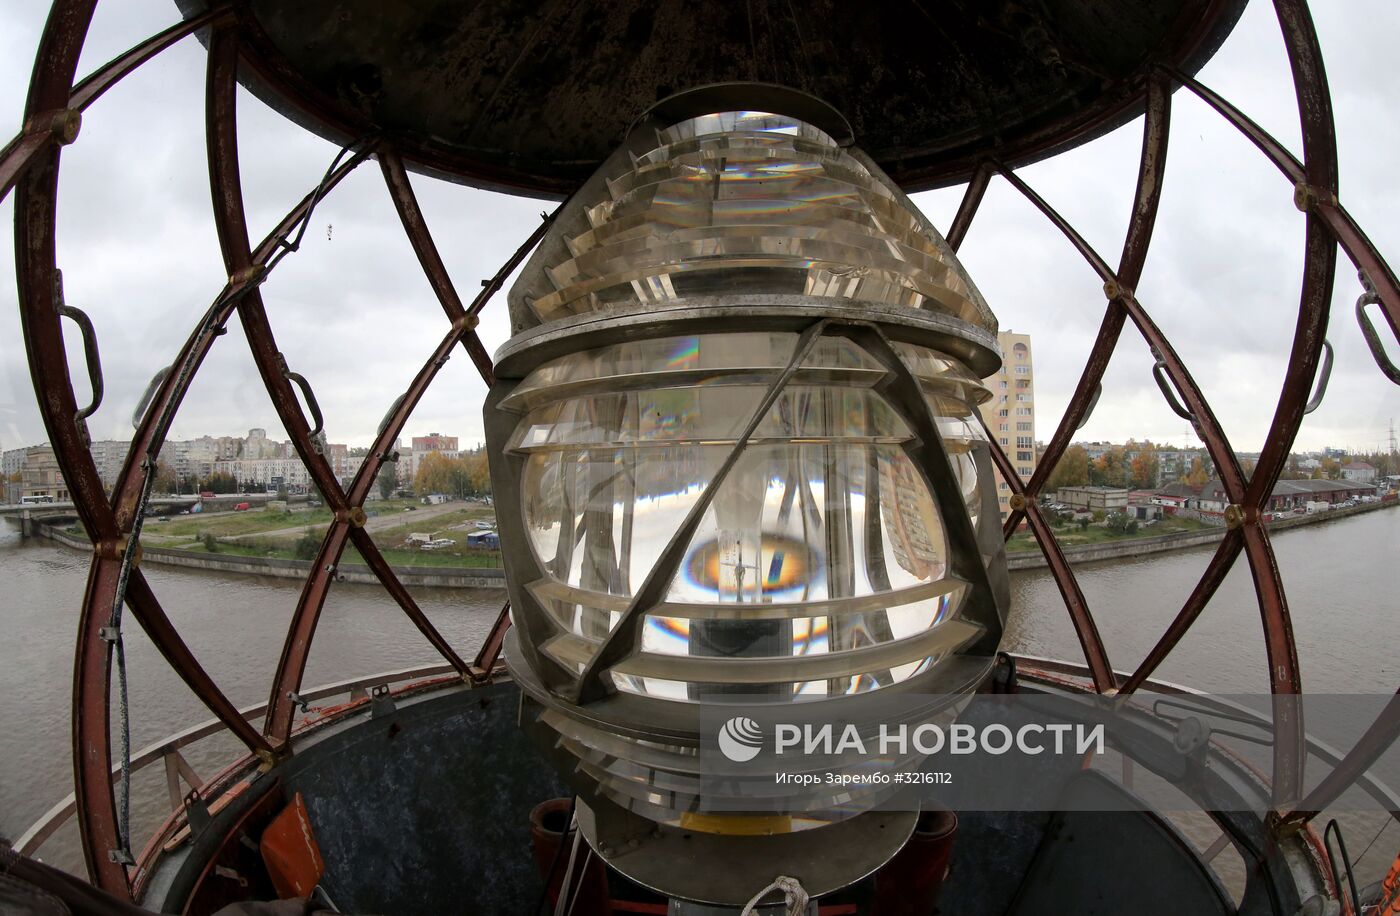 Плавучий маяк "Ирбенский" стал экспонатом Музея Мирового океана в Калининграде